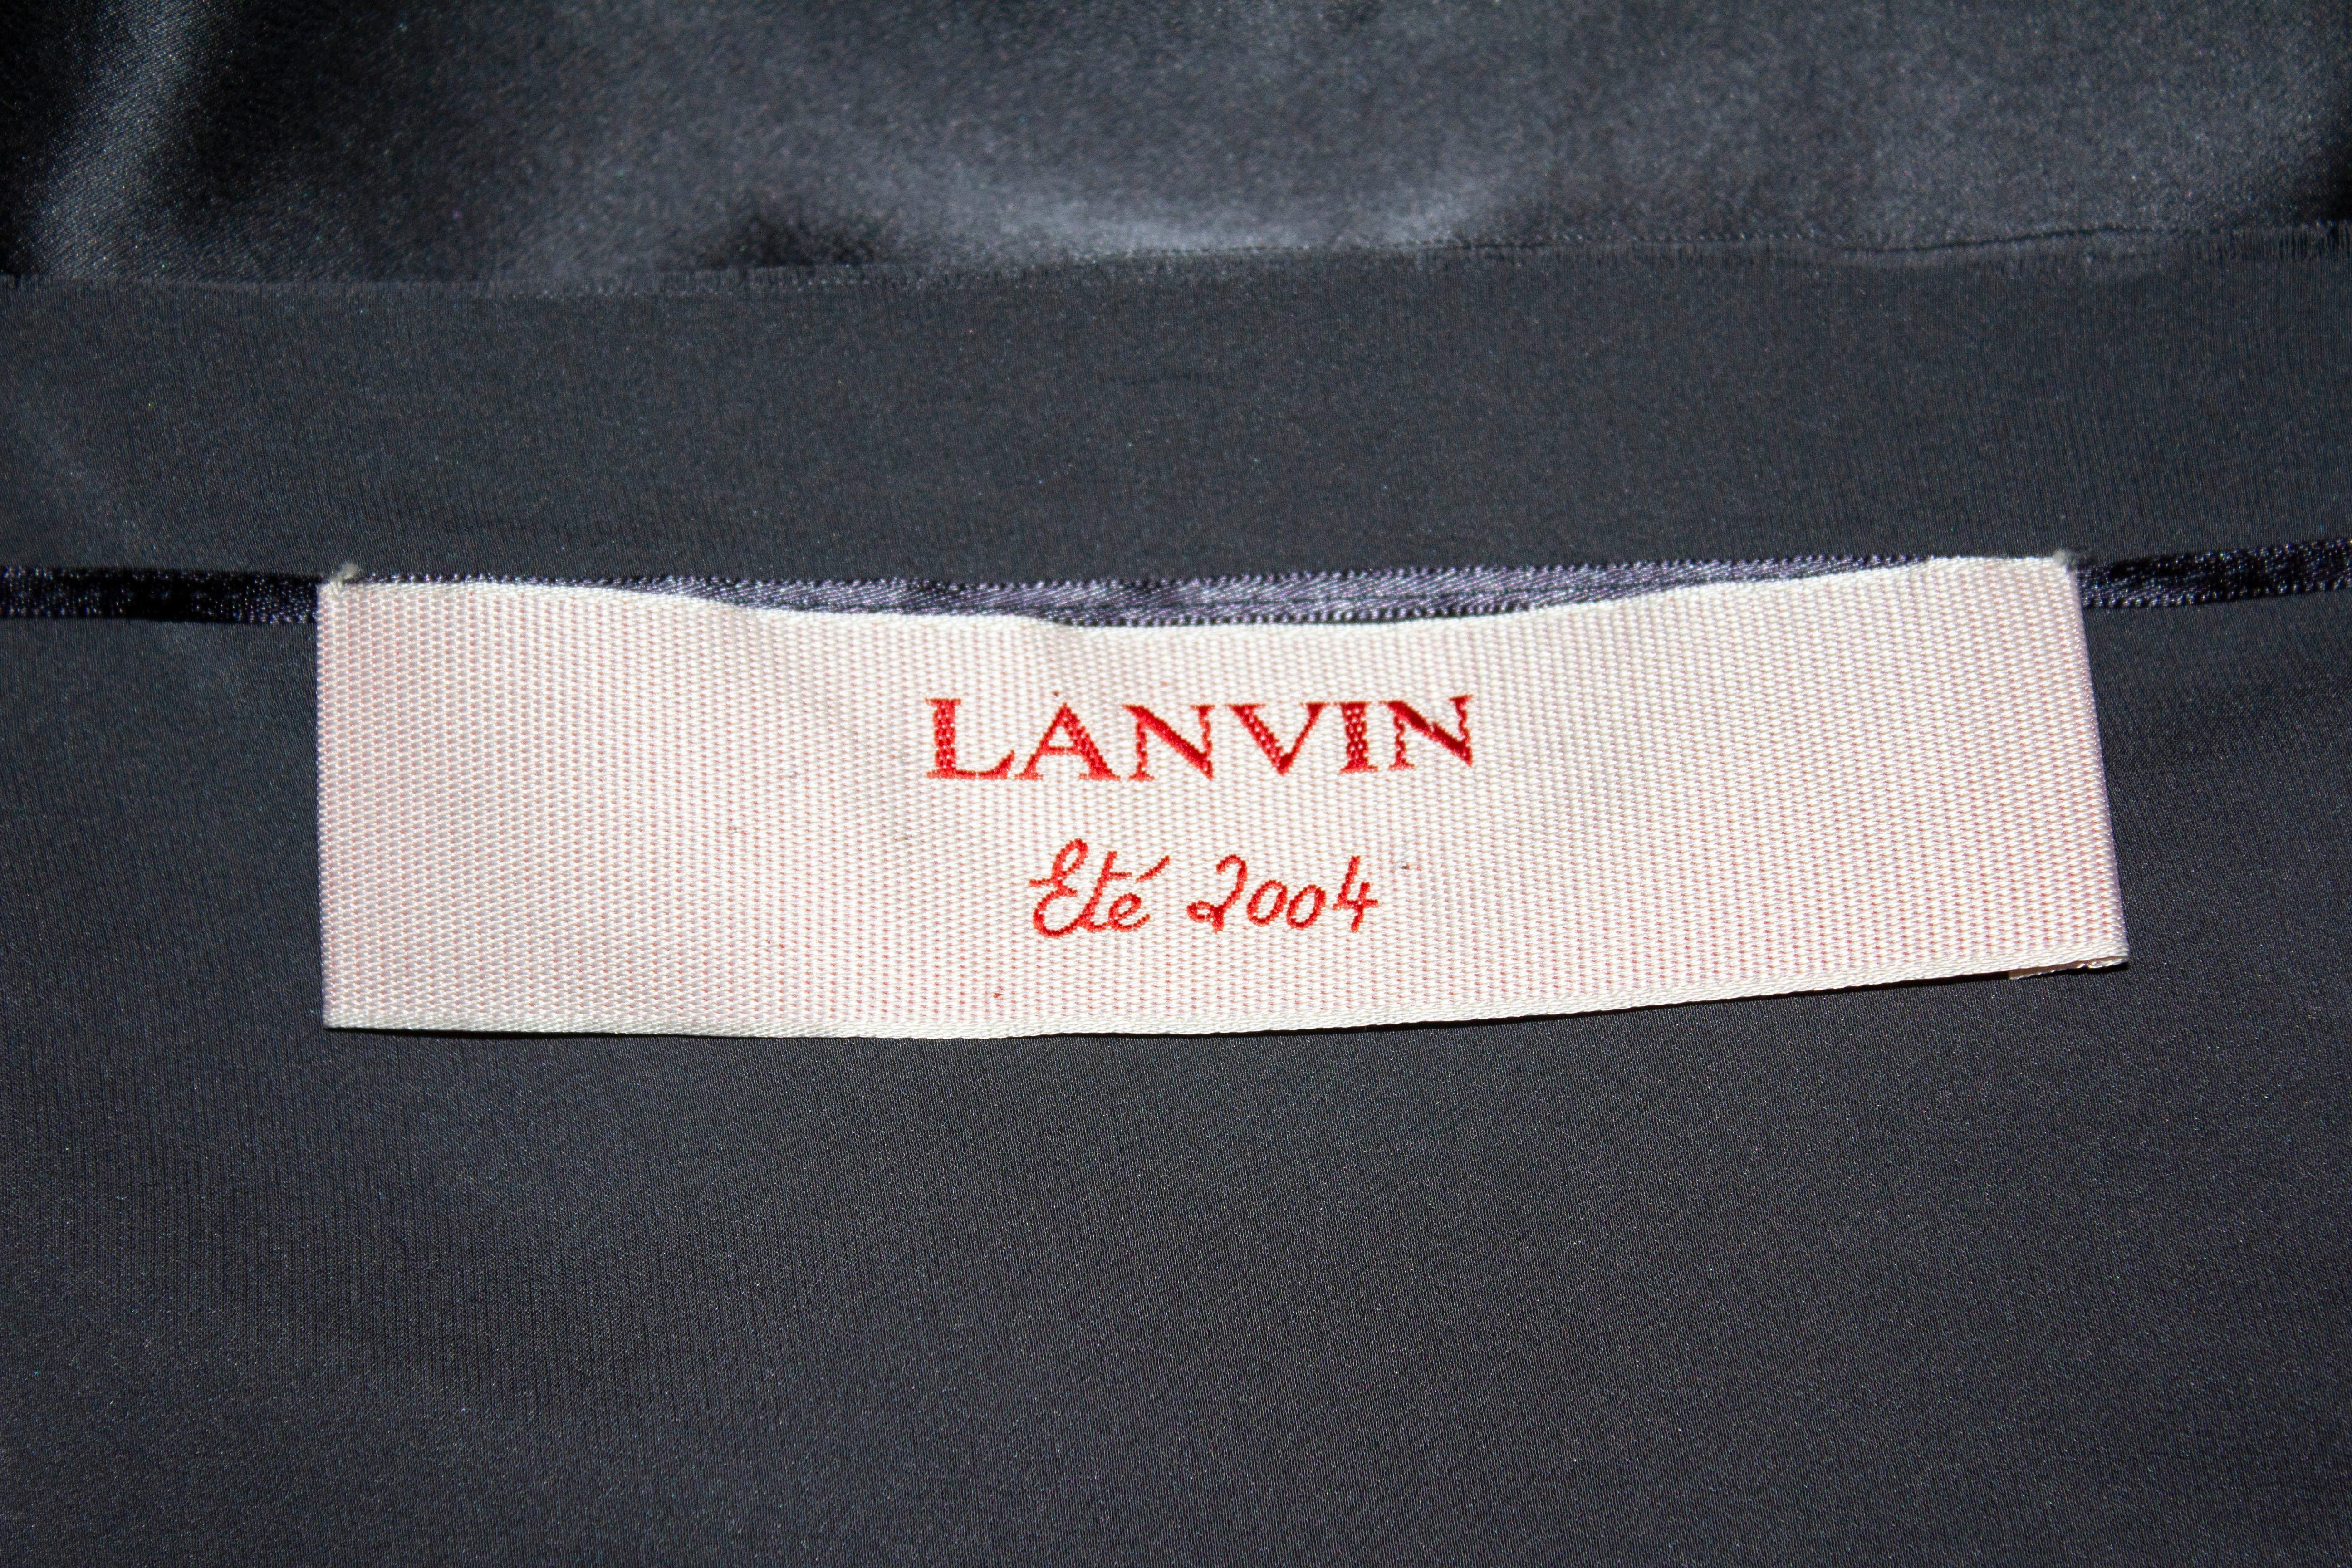 Ein schicker Seidenrock für den Sommer von Lanvin , Sommer 2004. Der Rock ist ungefüttert, hat Falten am Ausschnitt und wird mit einem großen Haken und Ösen sowie Druckknöpfen geschlossen. Die rohen Kanten sind gewollt, können aber natürlich gesäumt